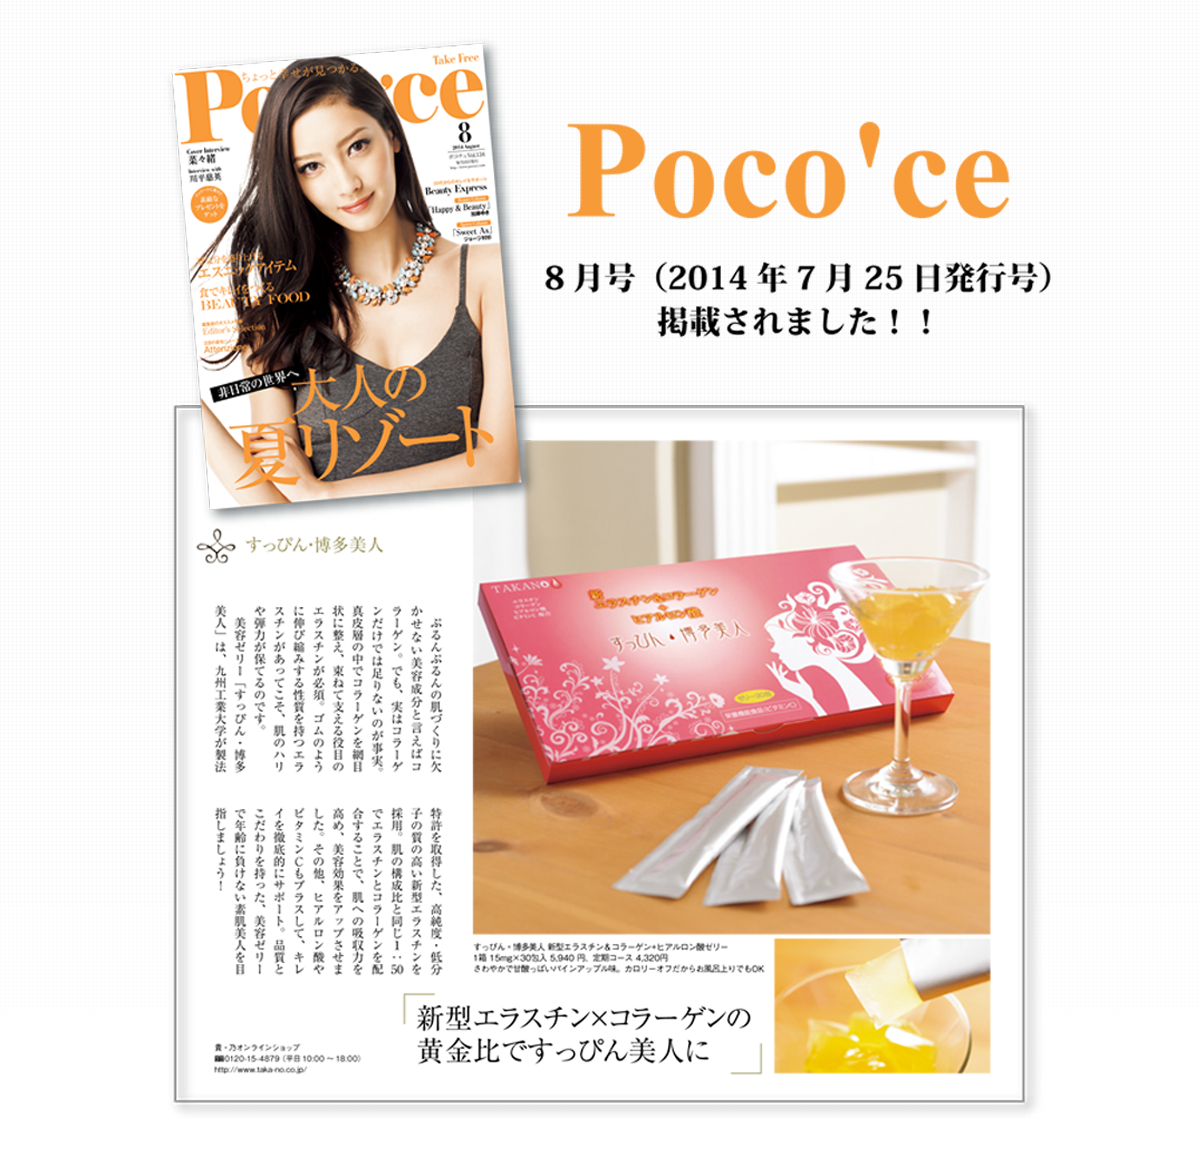 メディア掲載実績 Poco'ce 8月号（2014年7月25日発行号）掲載されました！！